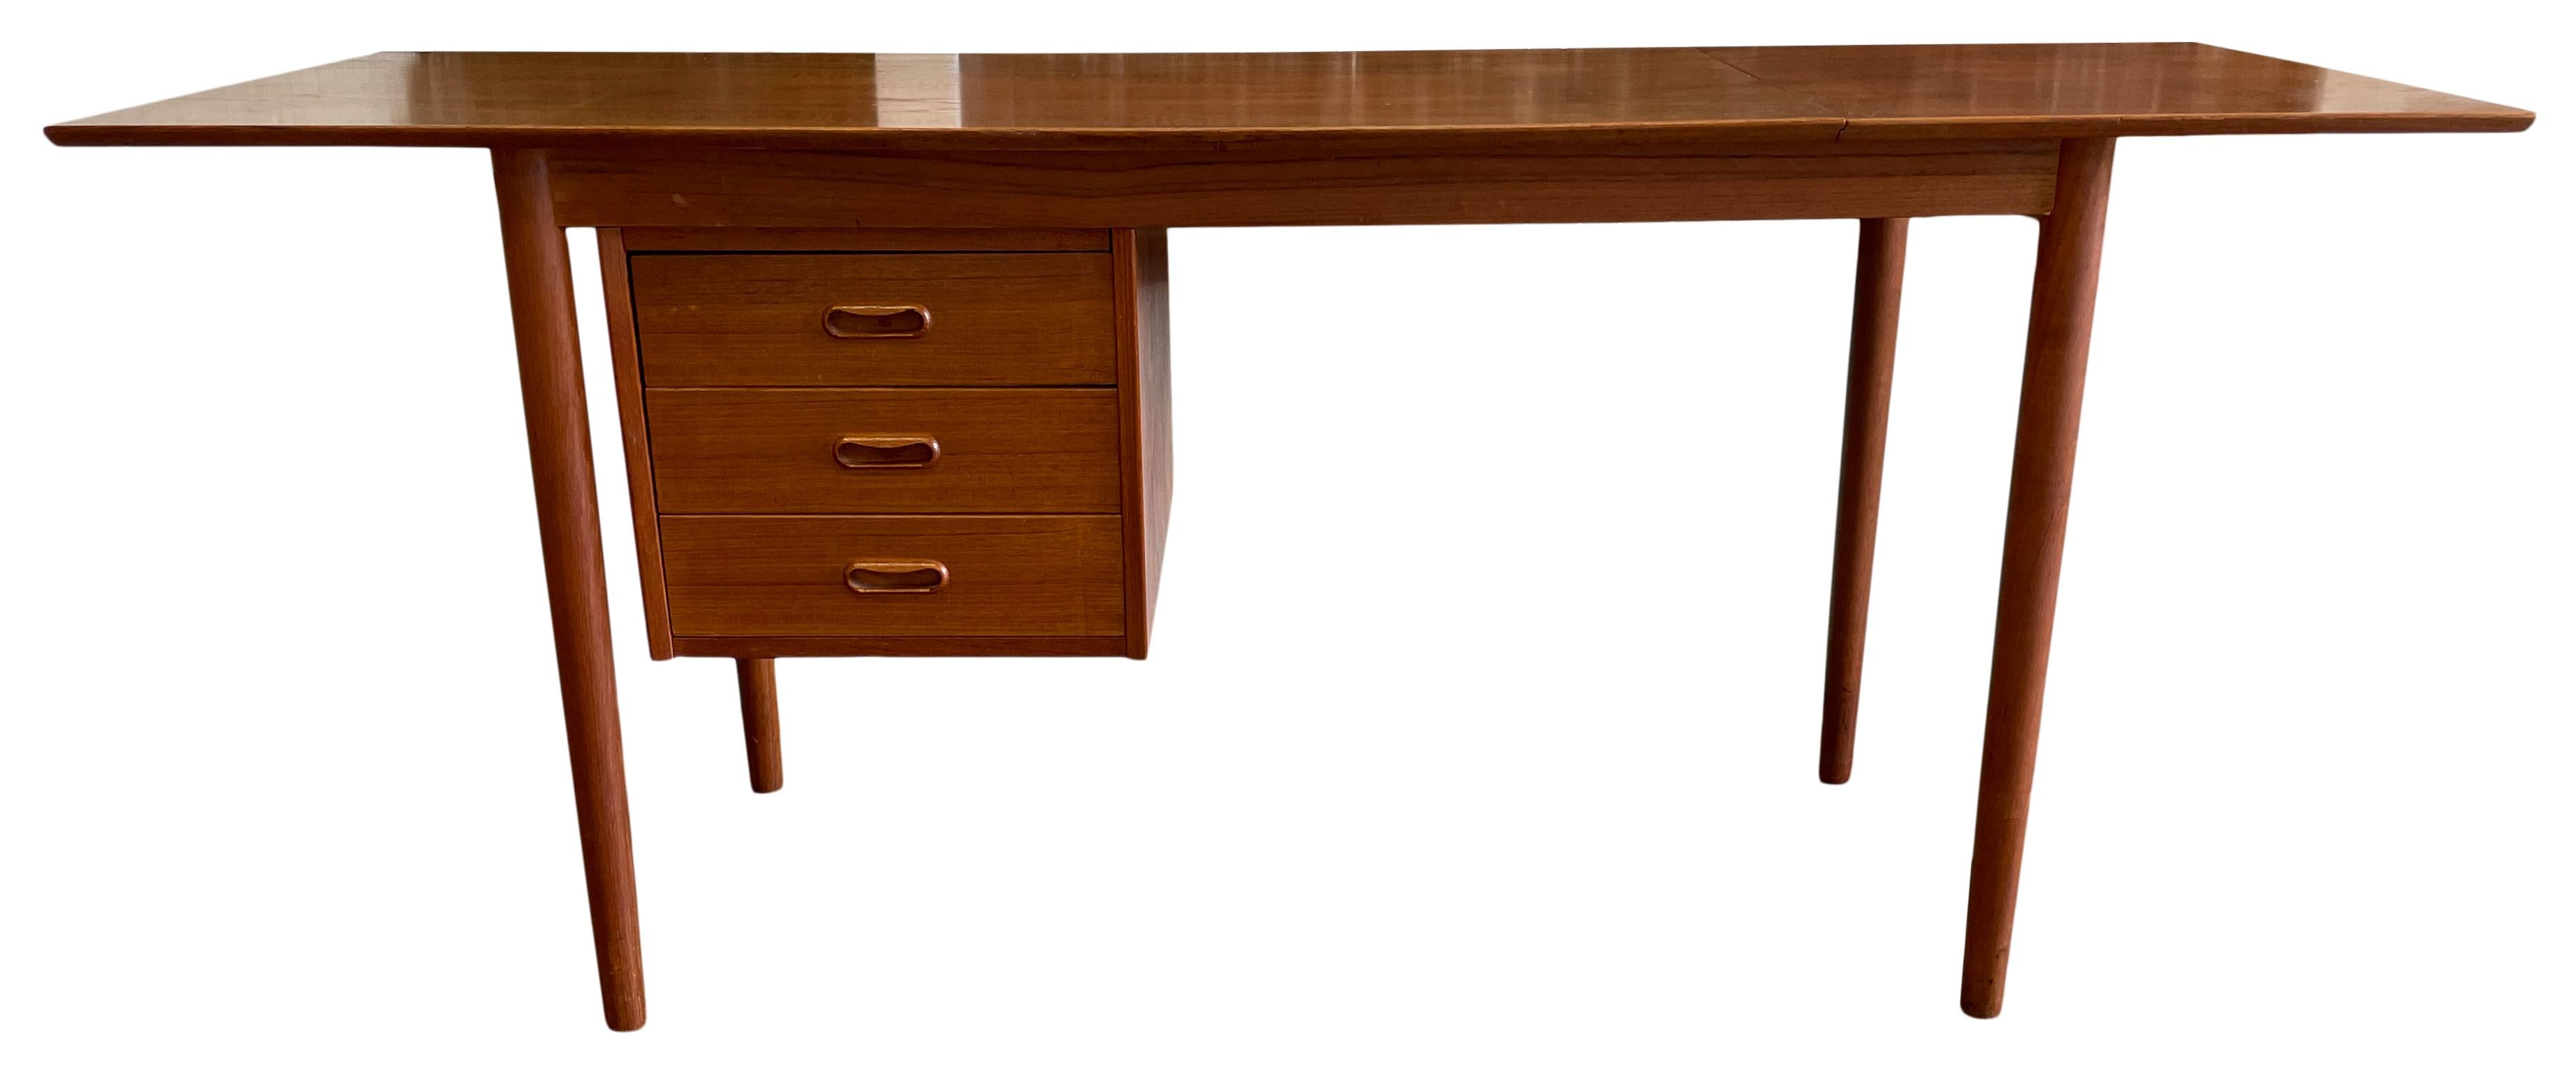 Mid Century Danish Modern Arne Vodder Teak Drop Leaf Desk for H.Sigh Denmark For Sale 2